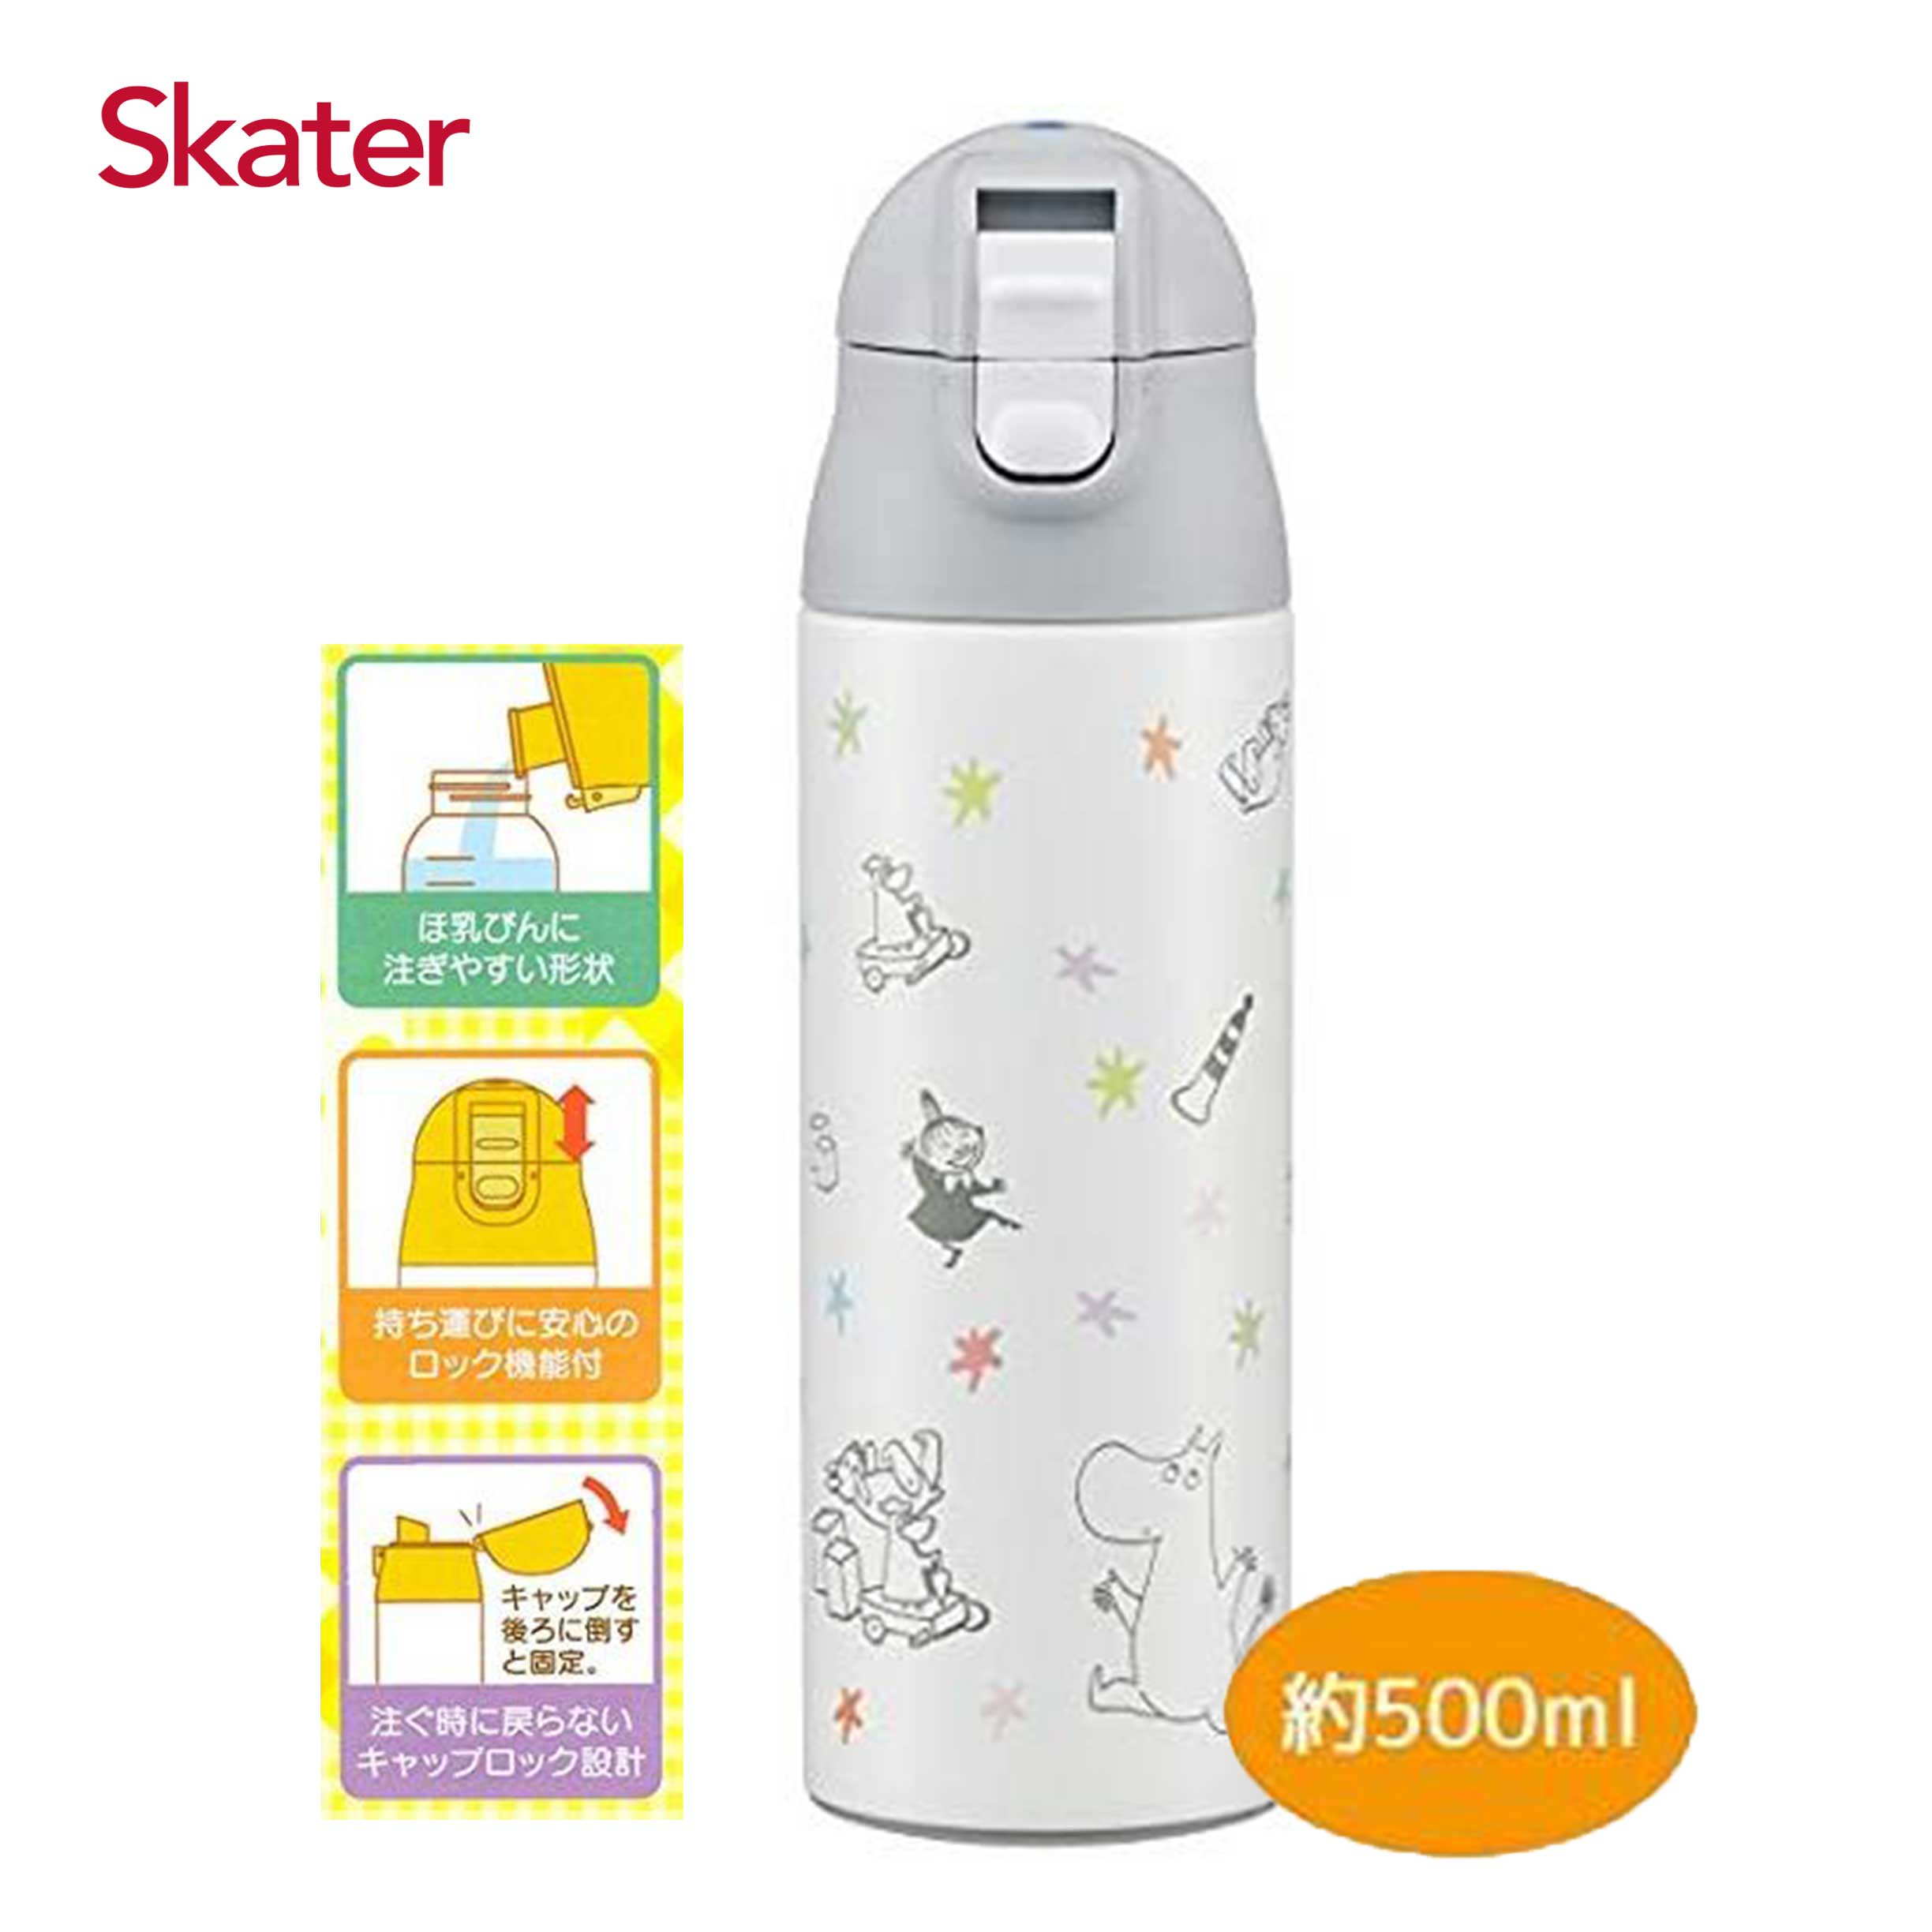 不鏽鋼保溫瓶 500ml-嚕嚕米 Moomin skater 日本進口正版授權